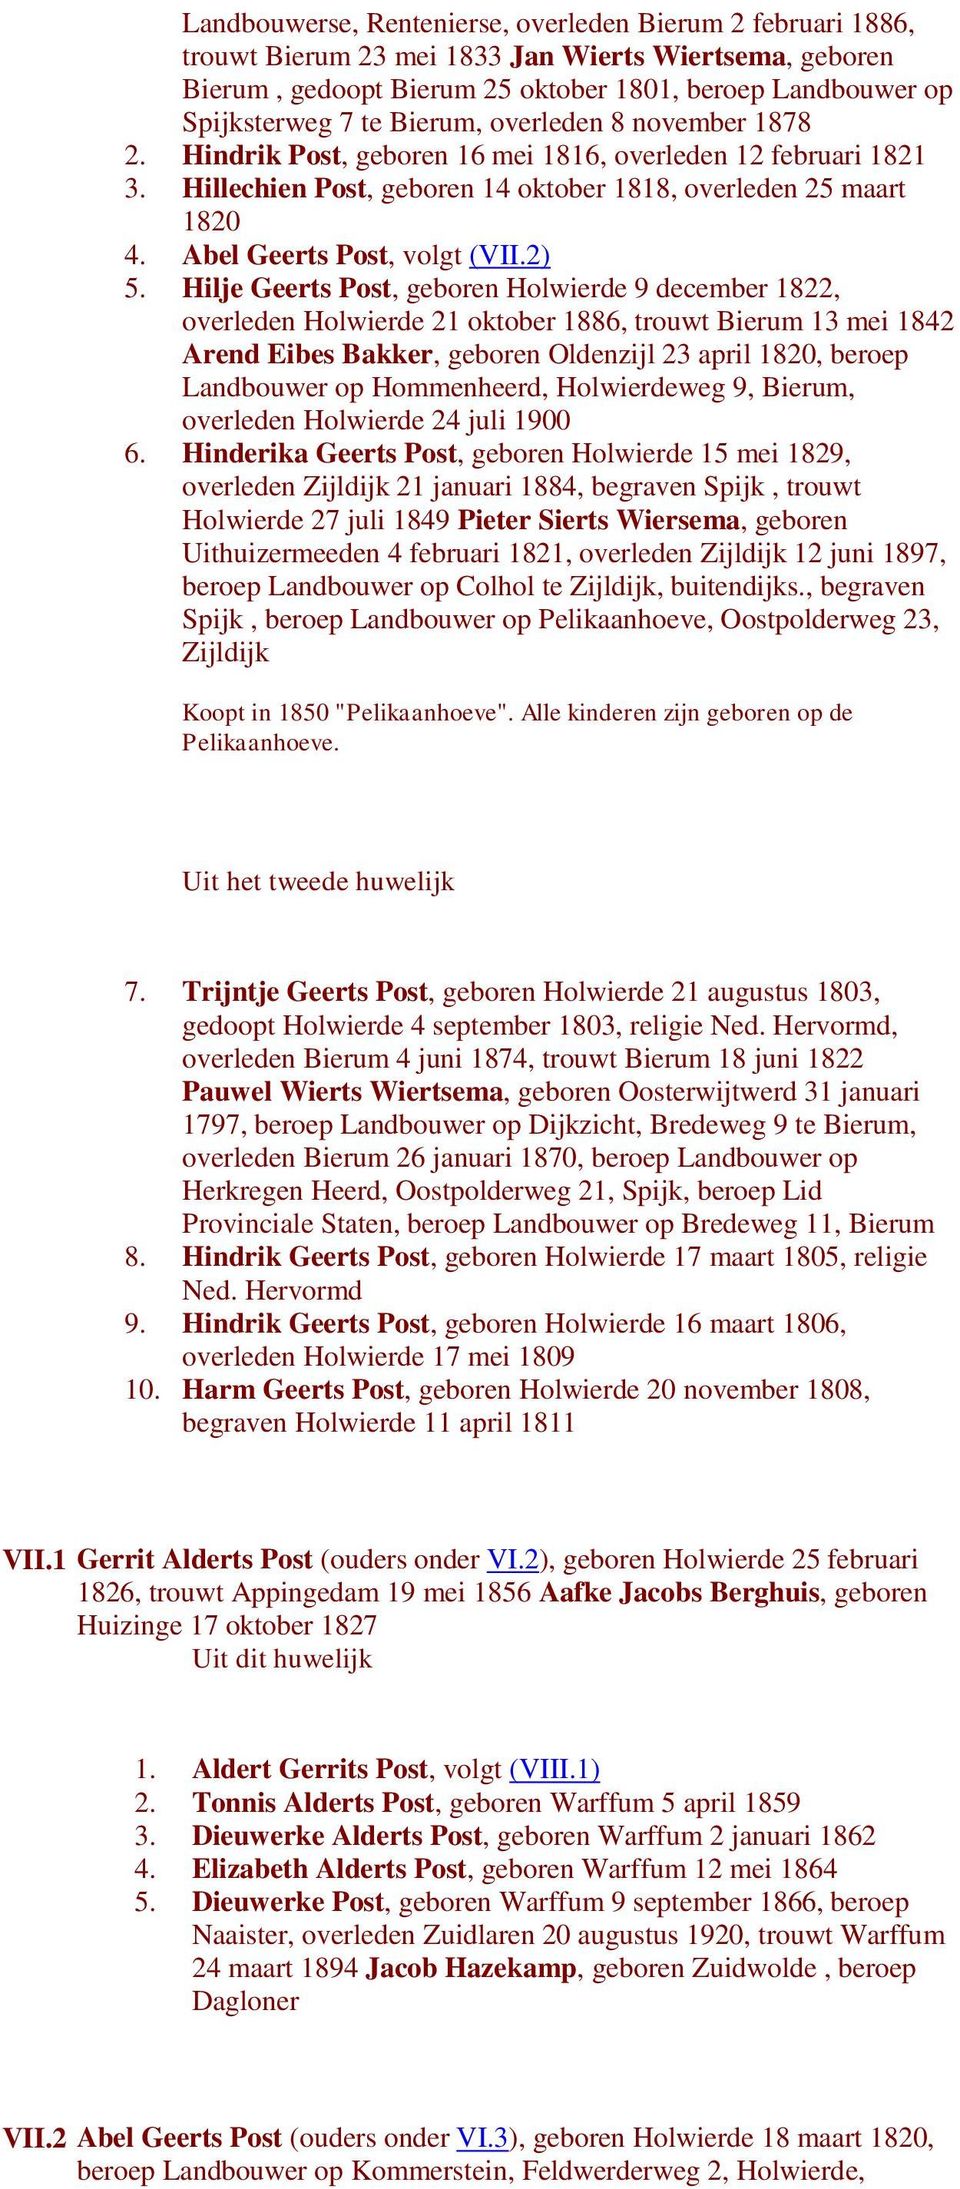 2) 5. Hilje Geerts Post, geboren Holwierde 9 december 1822, overleden Holwierde 21 oktober 1886, trouwt Bierum 13 mei 1842 Arend Eibes Bakker, geboren Oldenzijl 23 april 1820, beroep Landbouwer op